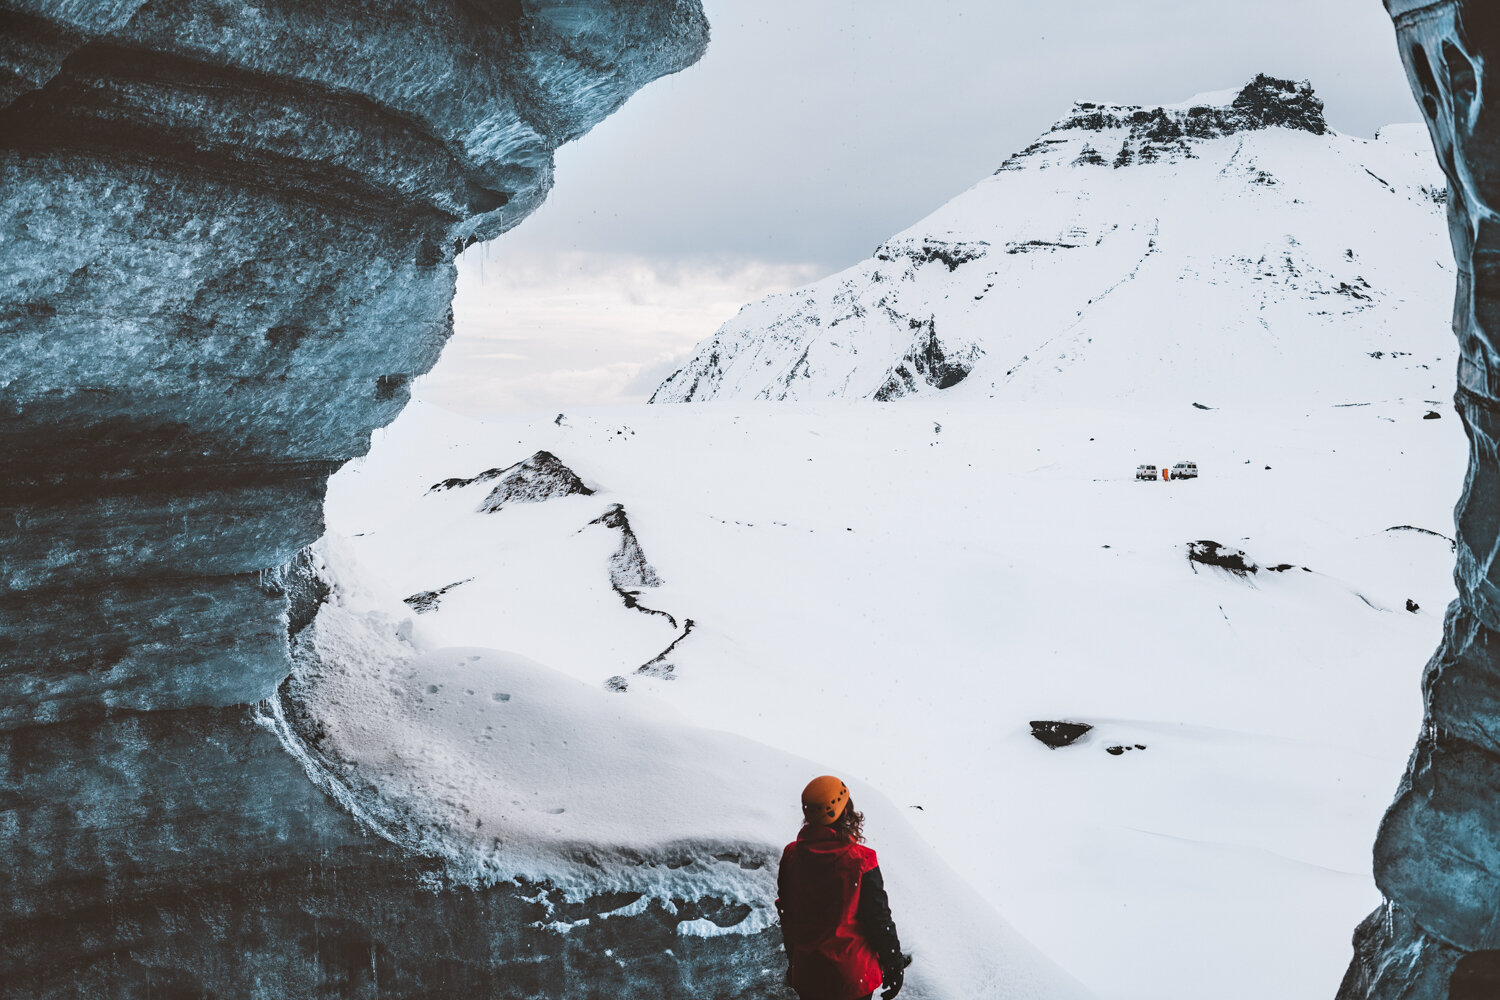 一个穿着红色夹克、戴着橙色头盔的小人从一个冰冷的冰川洞穴里凝视着山上的雪景